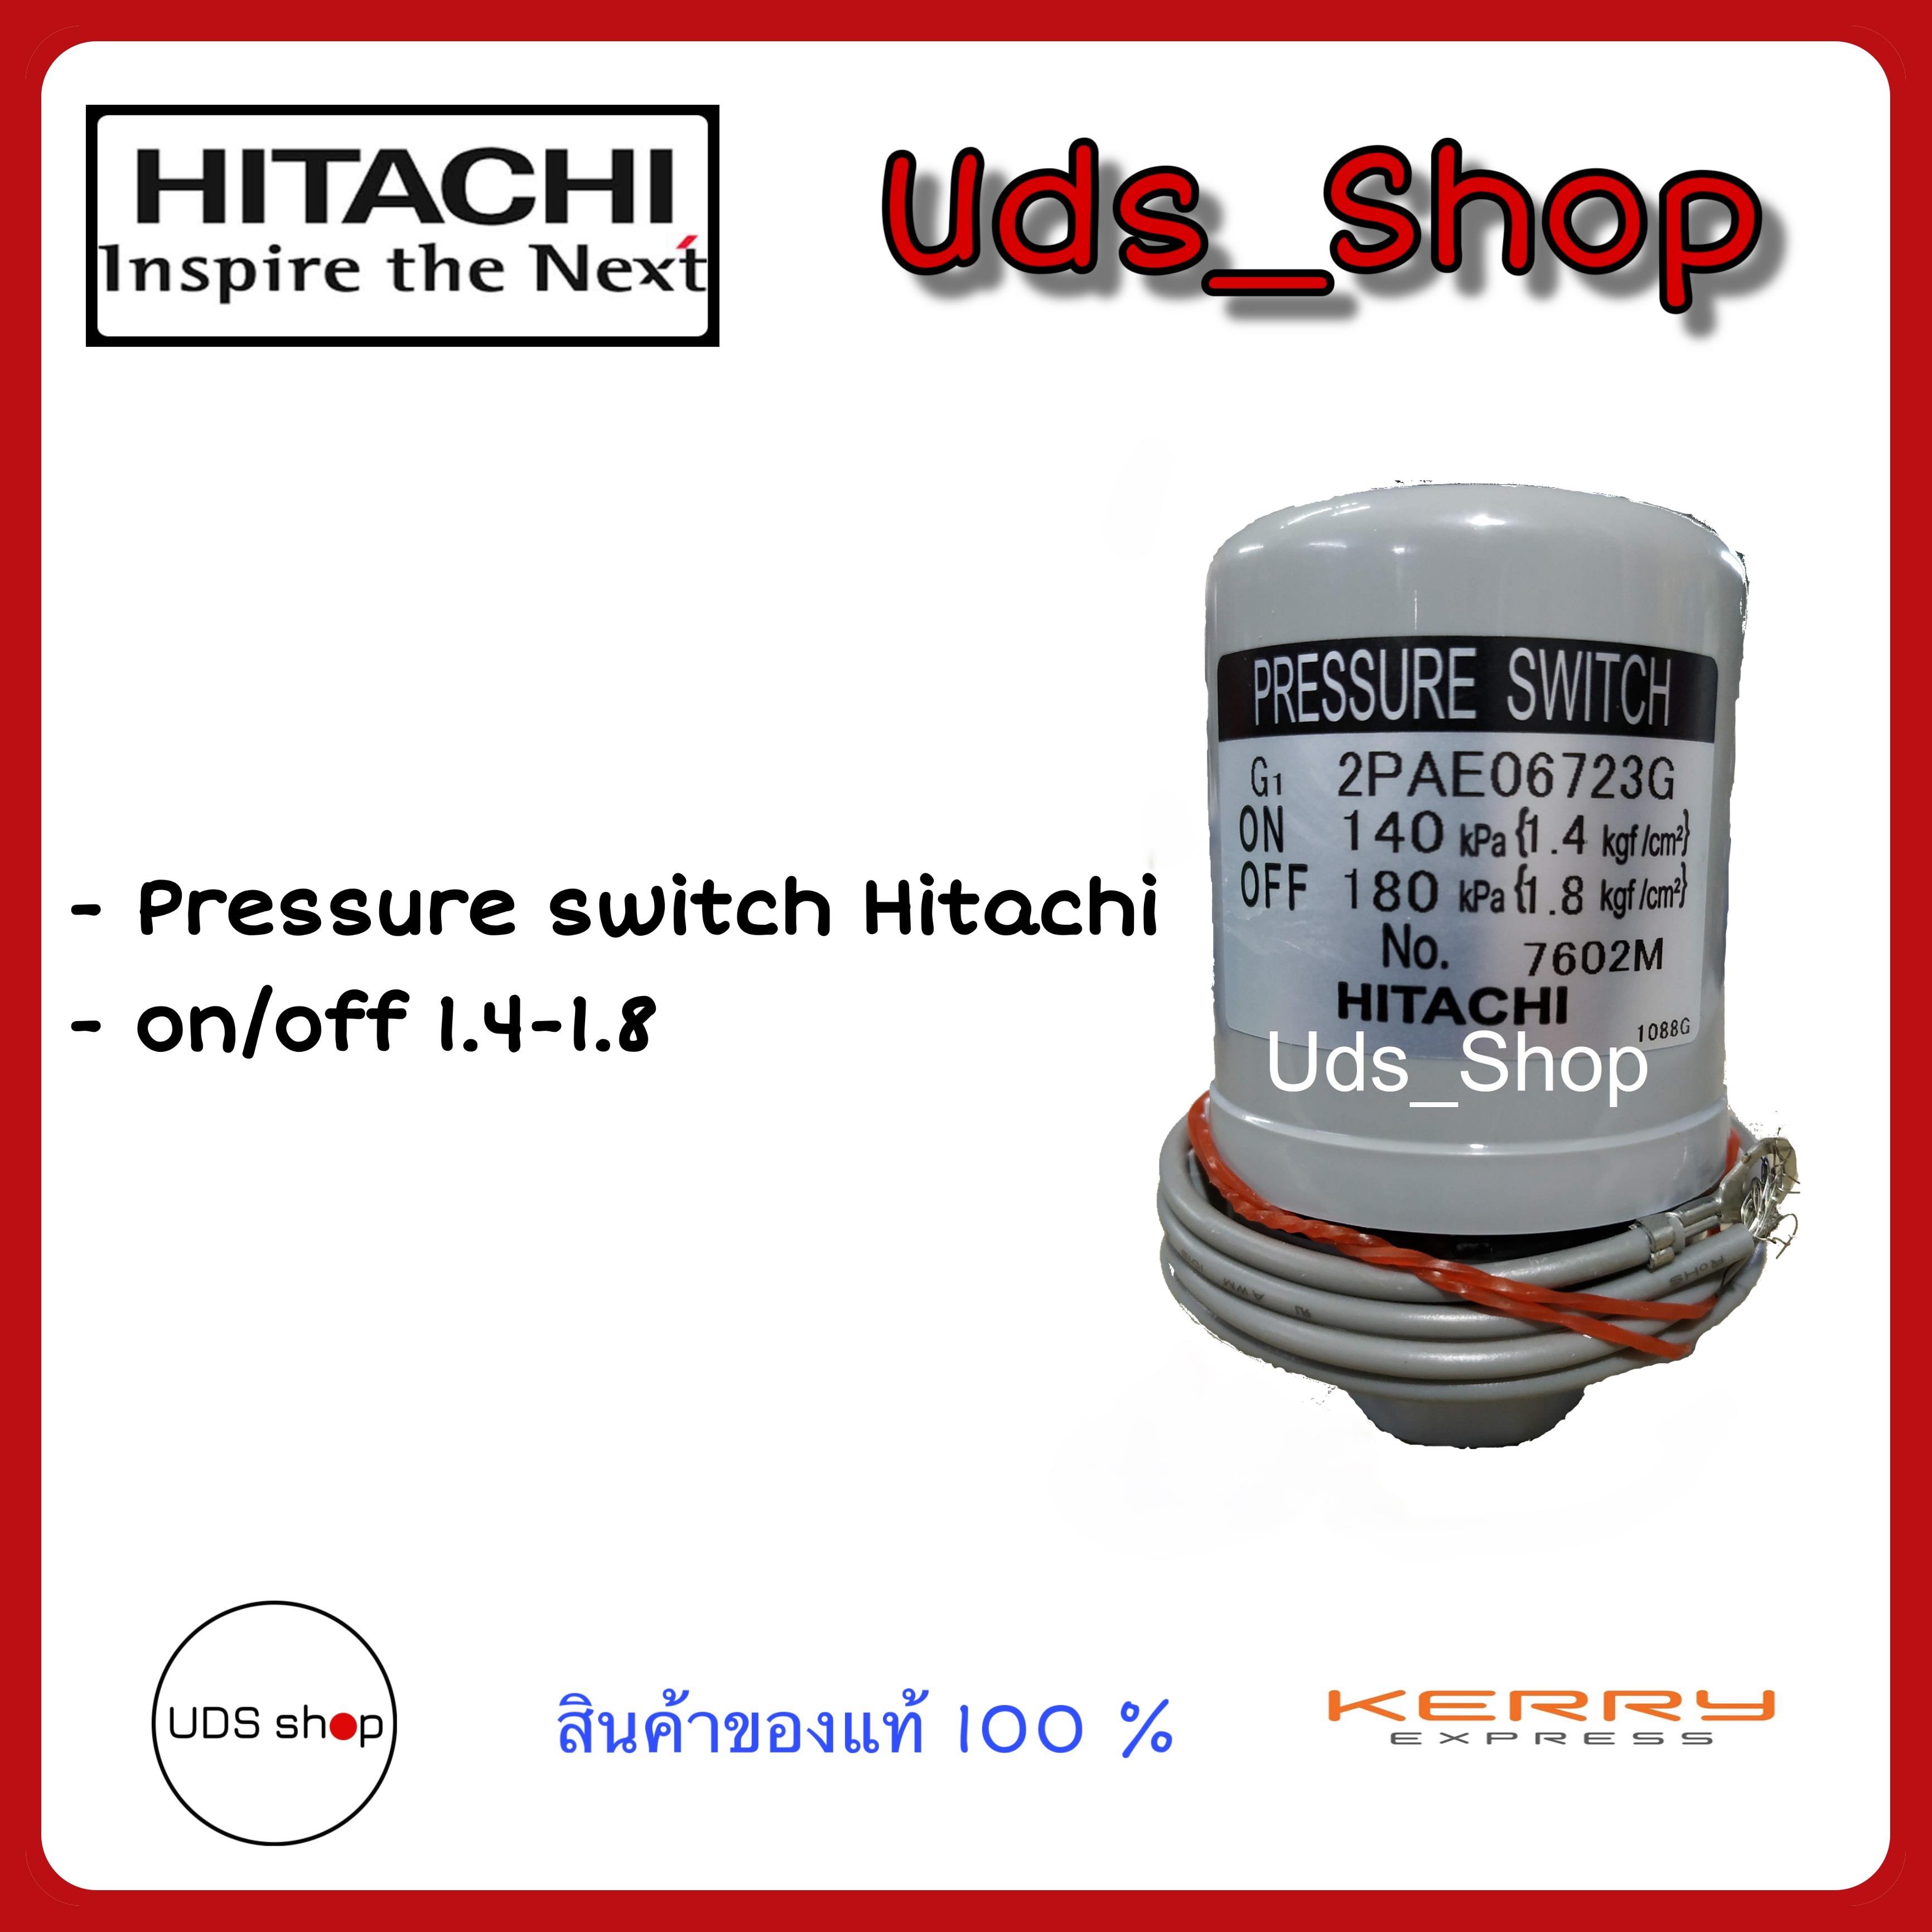 อะไหล่ปั๊มน้ำ สวิทซ์ควบคุมแรงดัน  Pressure switch  Hitachi On/Off 1.4-1.8 สินค้าจากโรงงานเทียบรุ่นก่อนเปลี่ยน